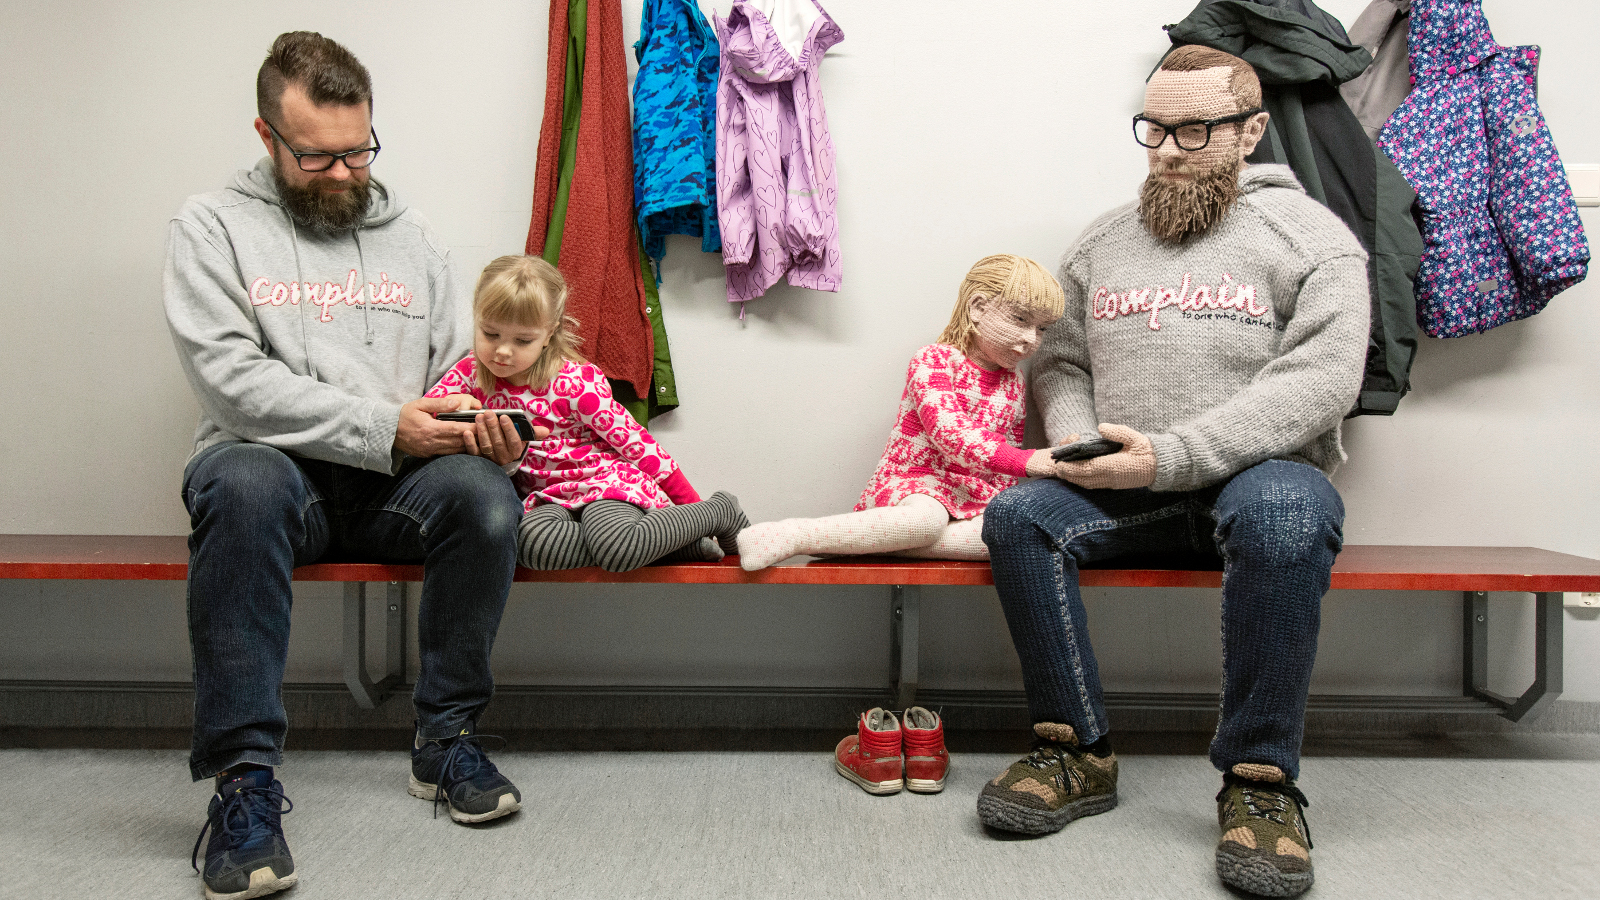 Kuvasssa on penkillä istumassa vasemmalla isä ja noin 3-vuotias vaaleatukkainen tytär. Heistä on vieressä identtiset virkatut hahmot istumassa penkillä.